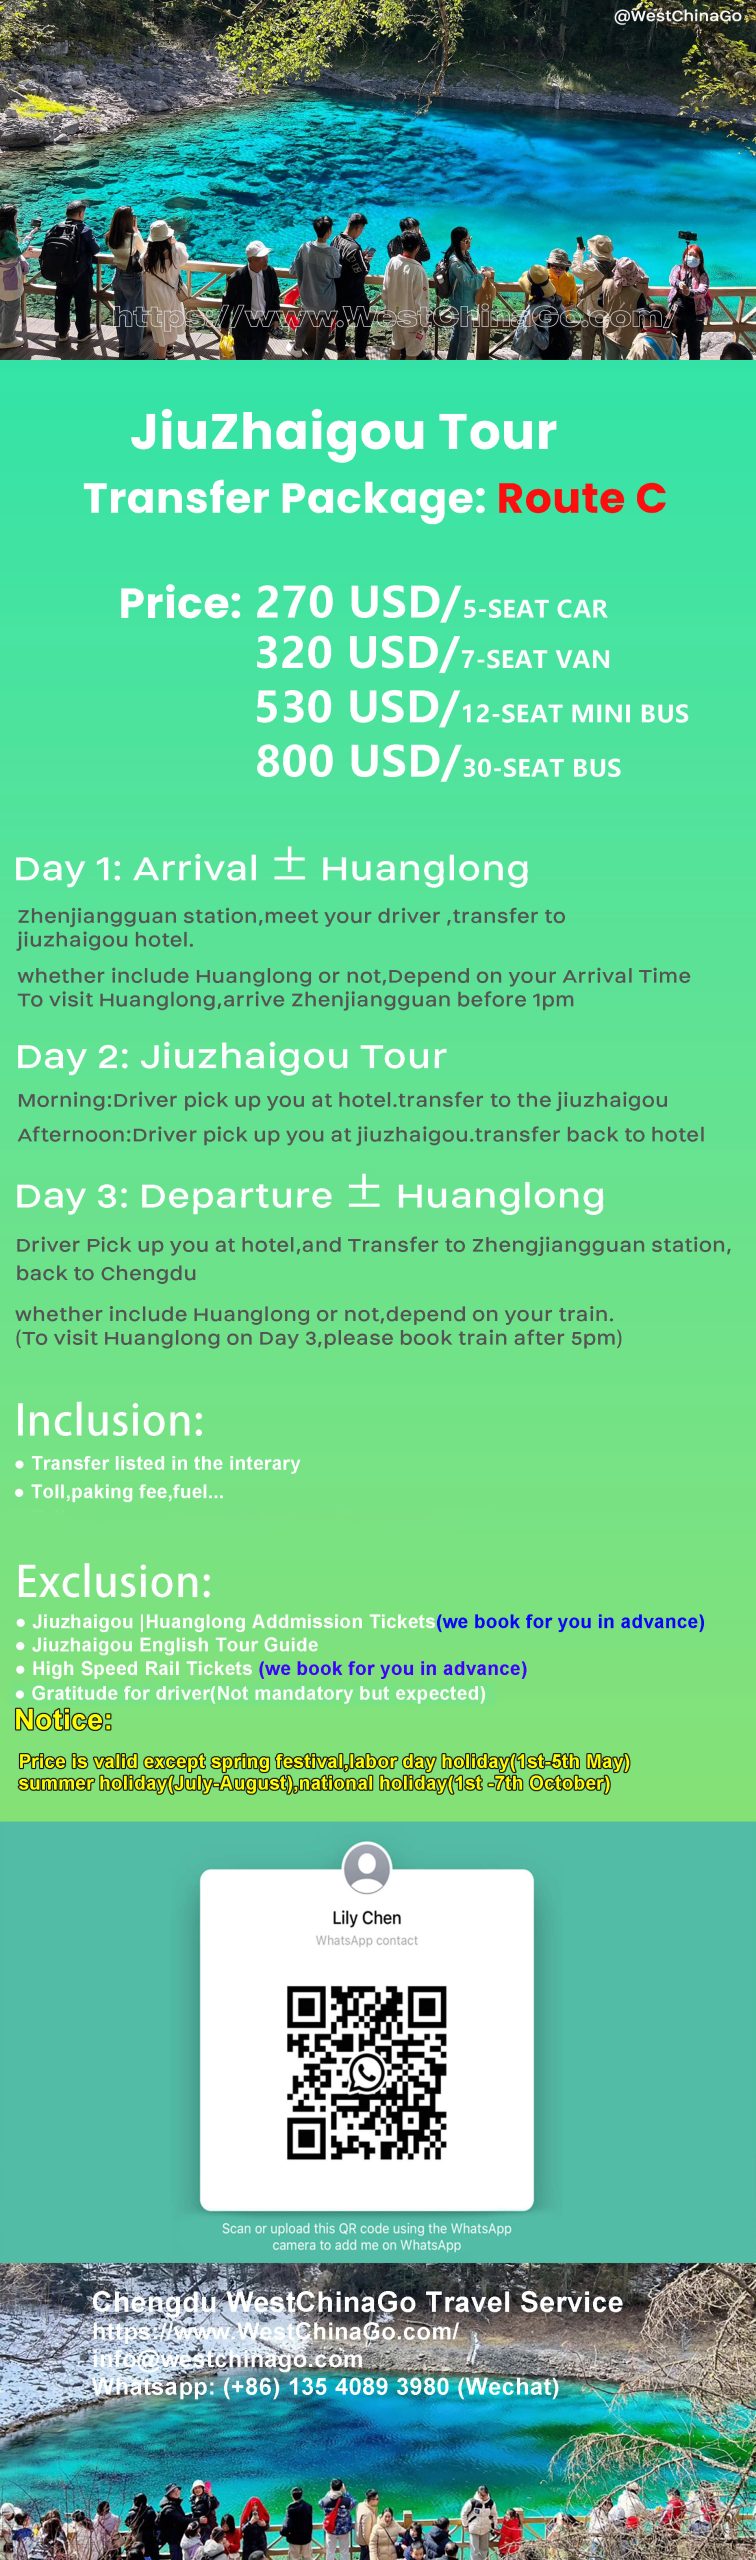 jiuzhaigou tour